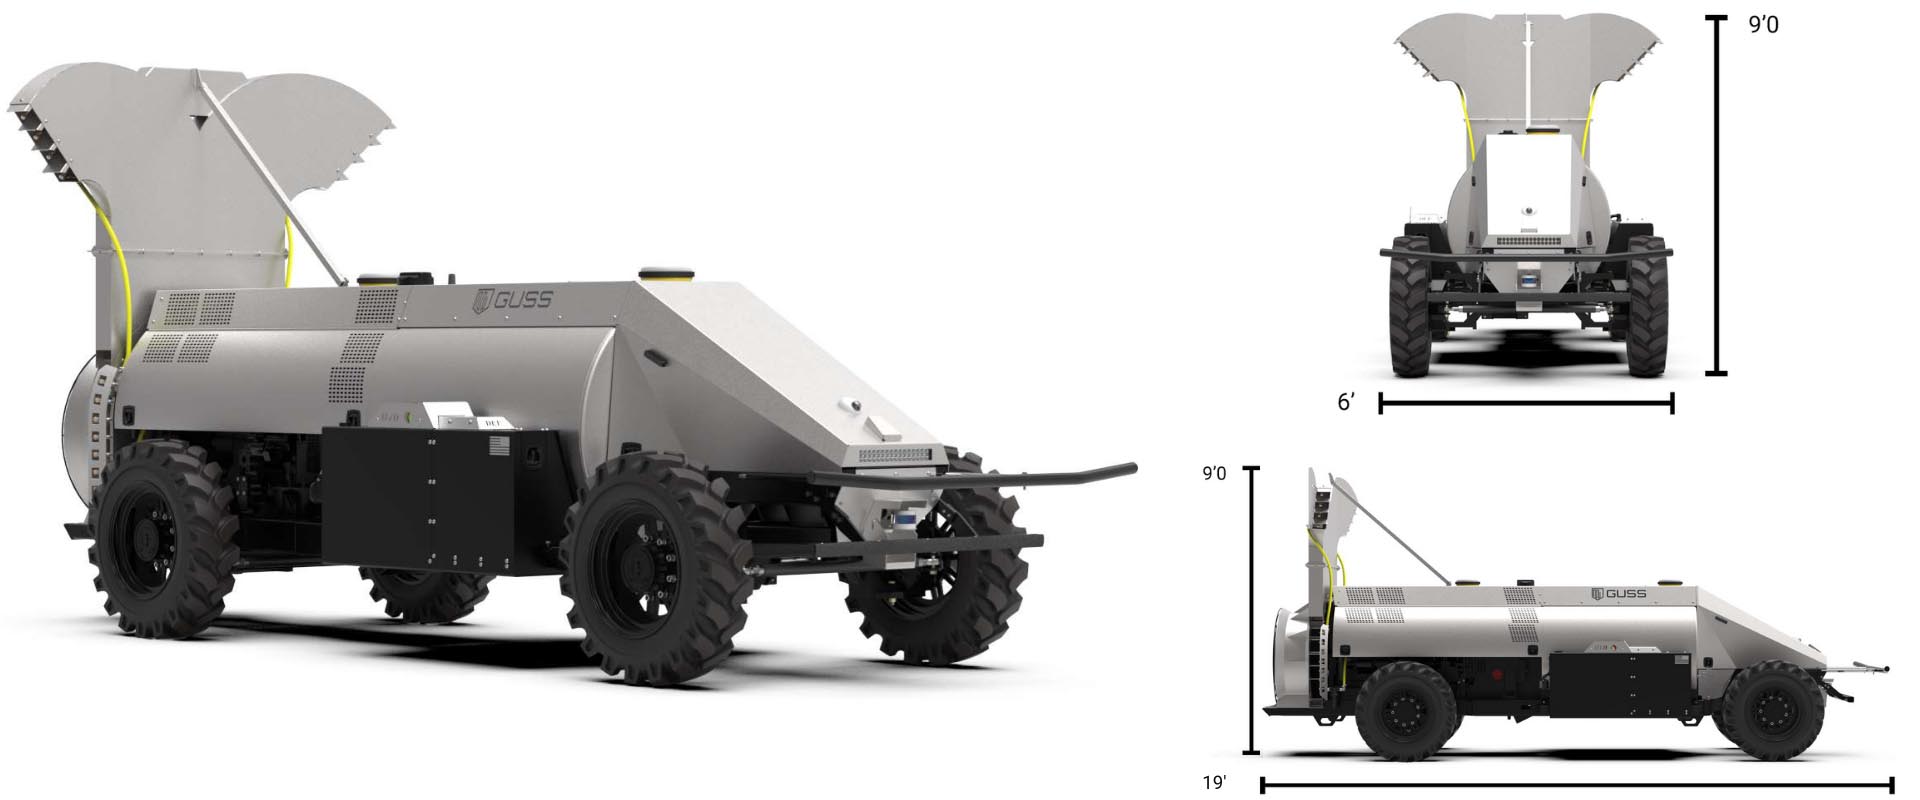 Mini GUSS autonomous sprayer with vineyard tower. 9 feet tall, 19 feet long, 6 feet wide.